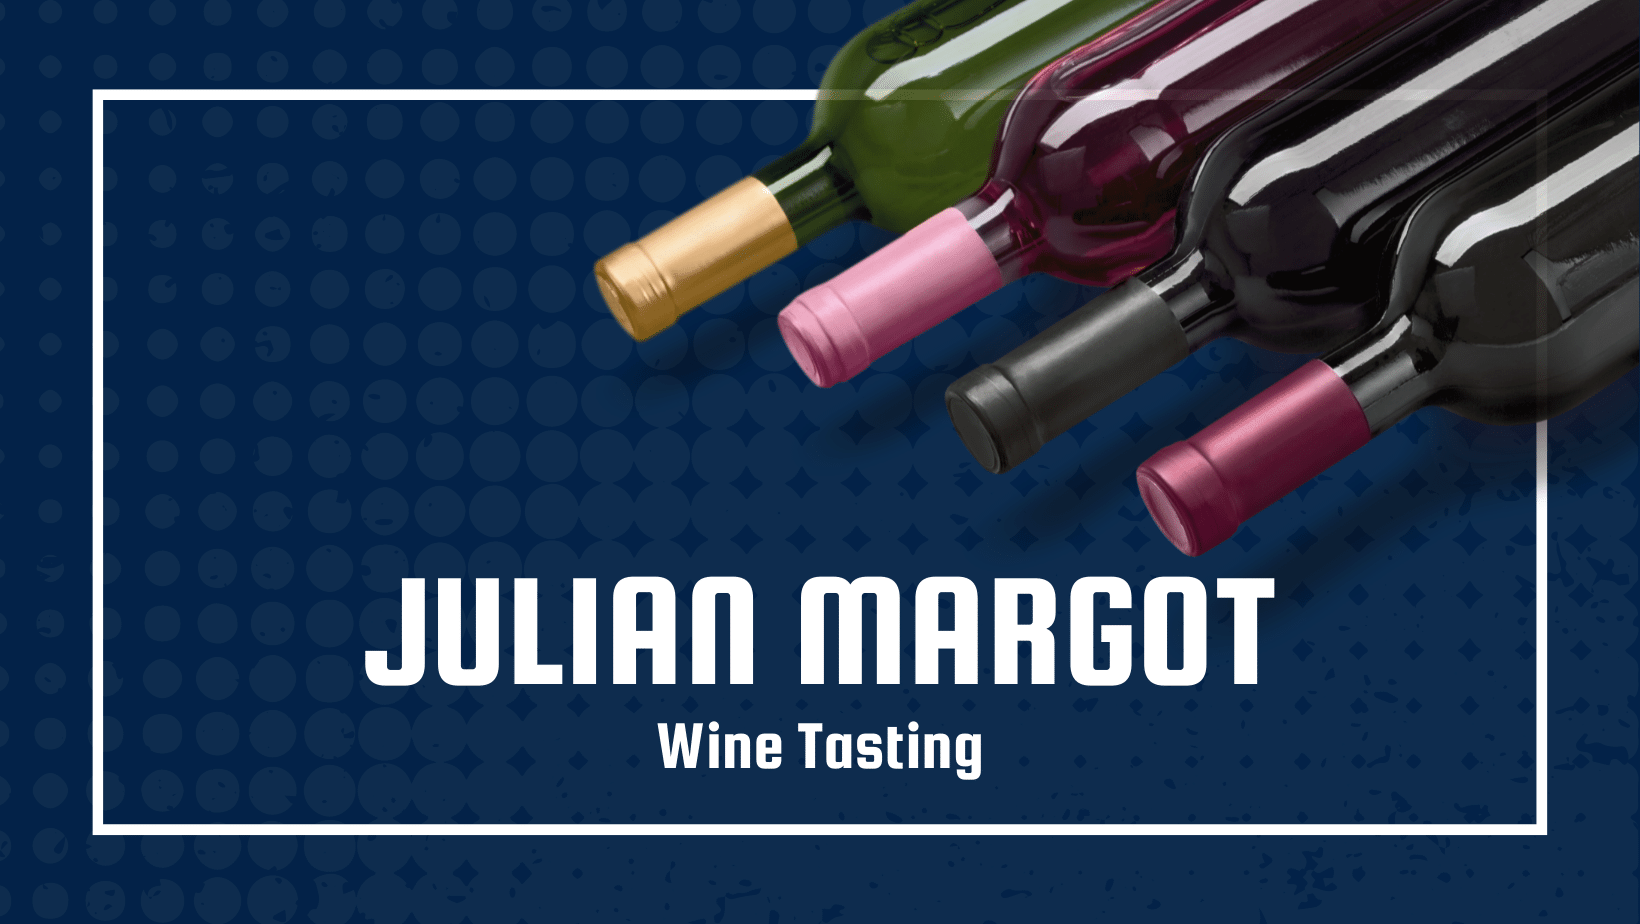 Julian Margot Wine Tasting by Windermere Mill Creek